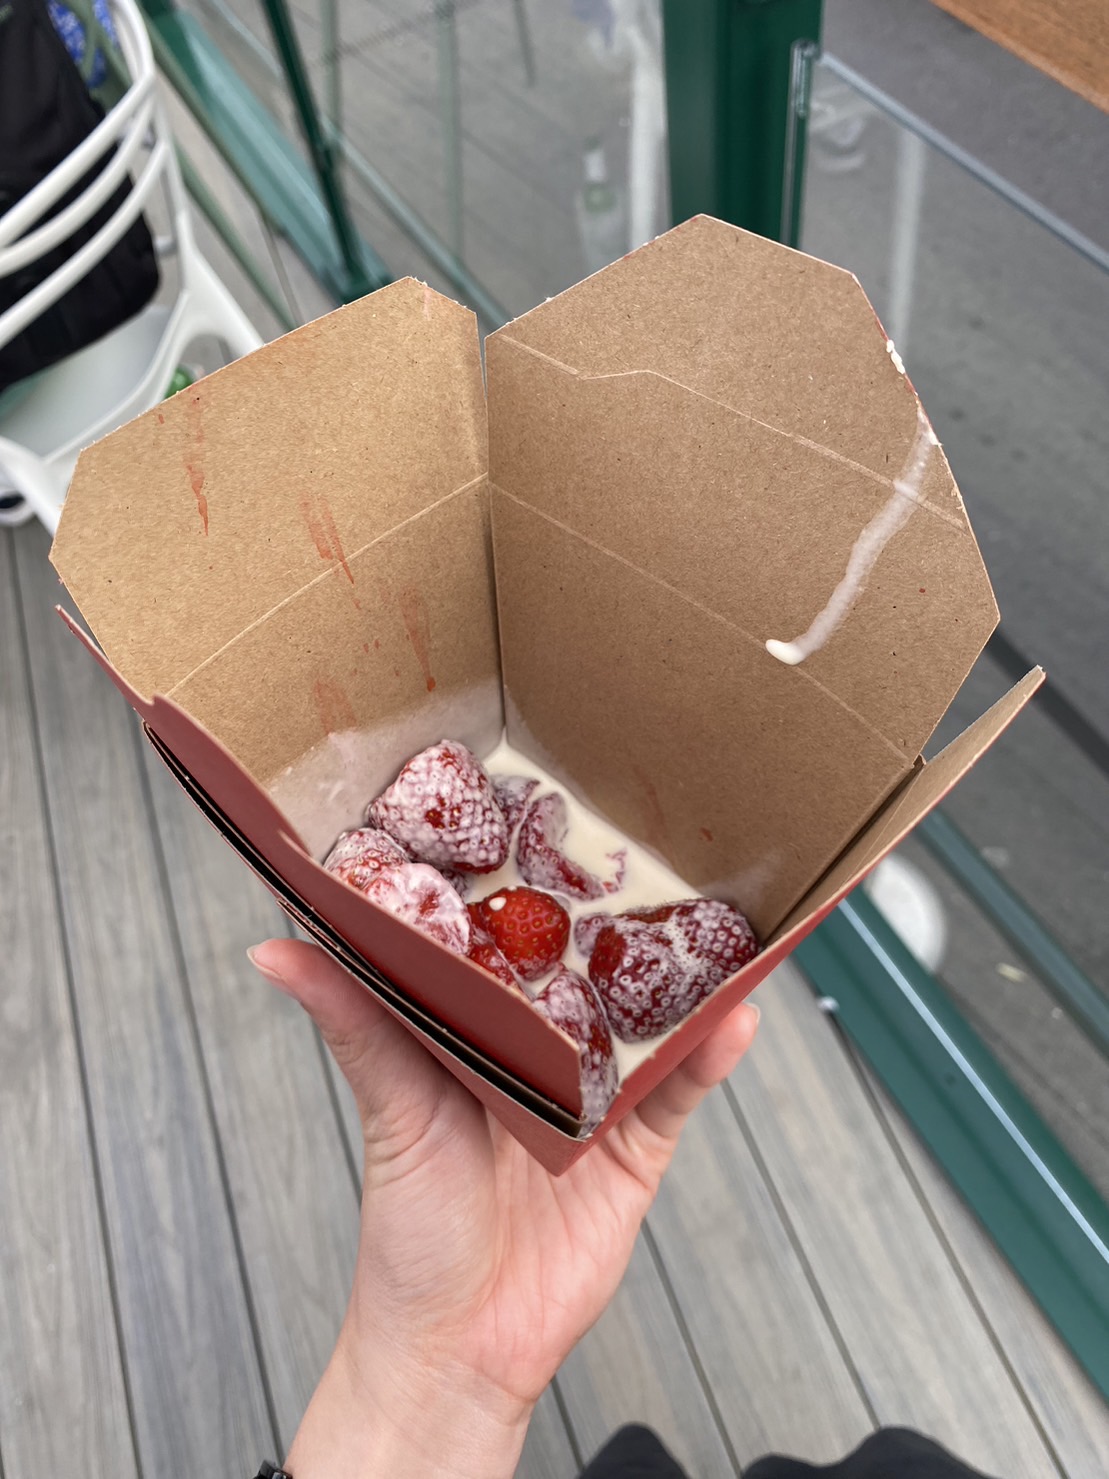 溫網著名點心「草莓與鮮奶油」。雖然採用紙包裝與紙叉，但熱銷19萬份，應也造成相當可觀的垃圾量。